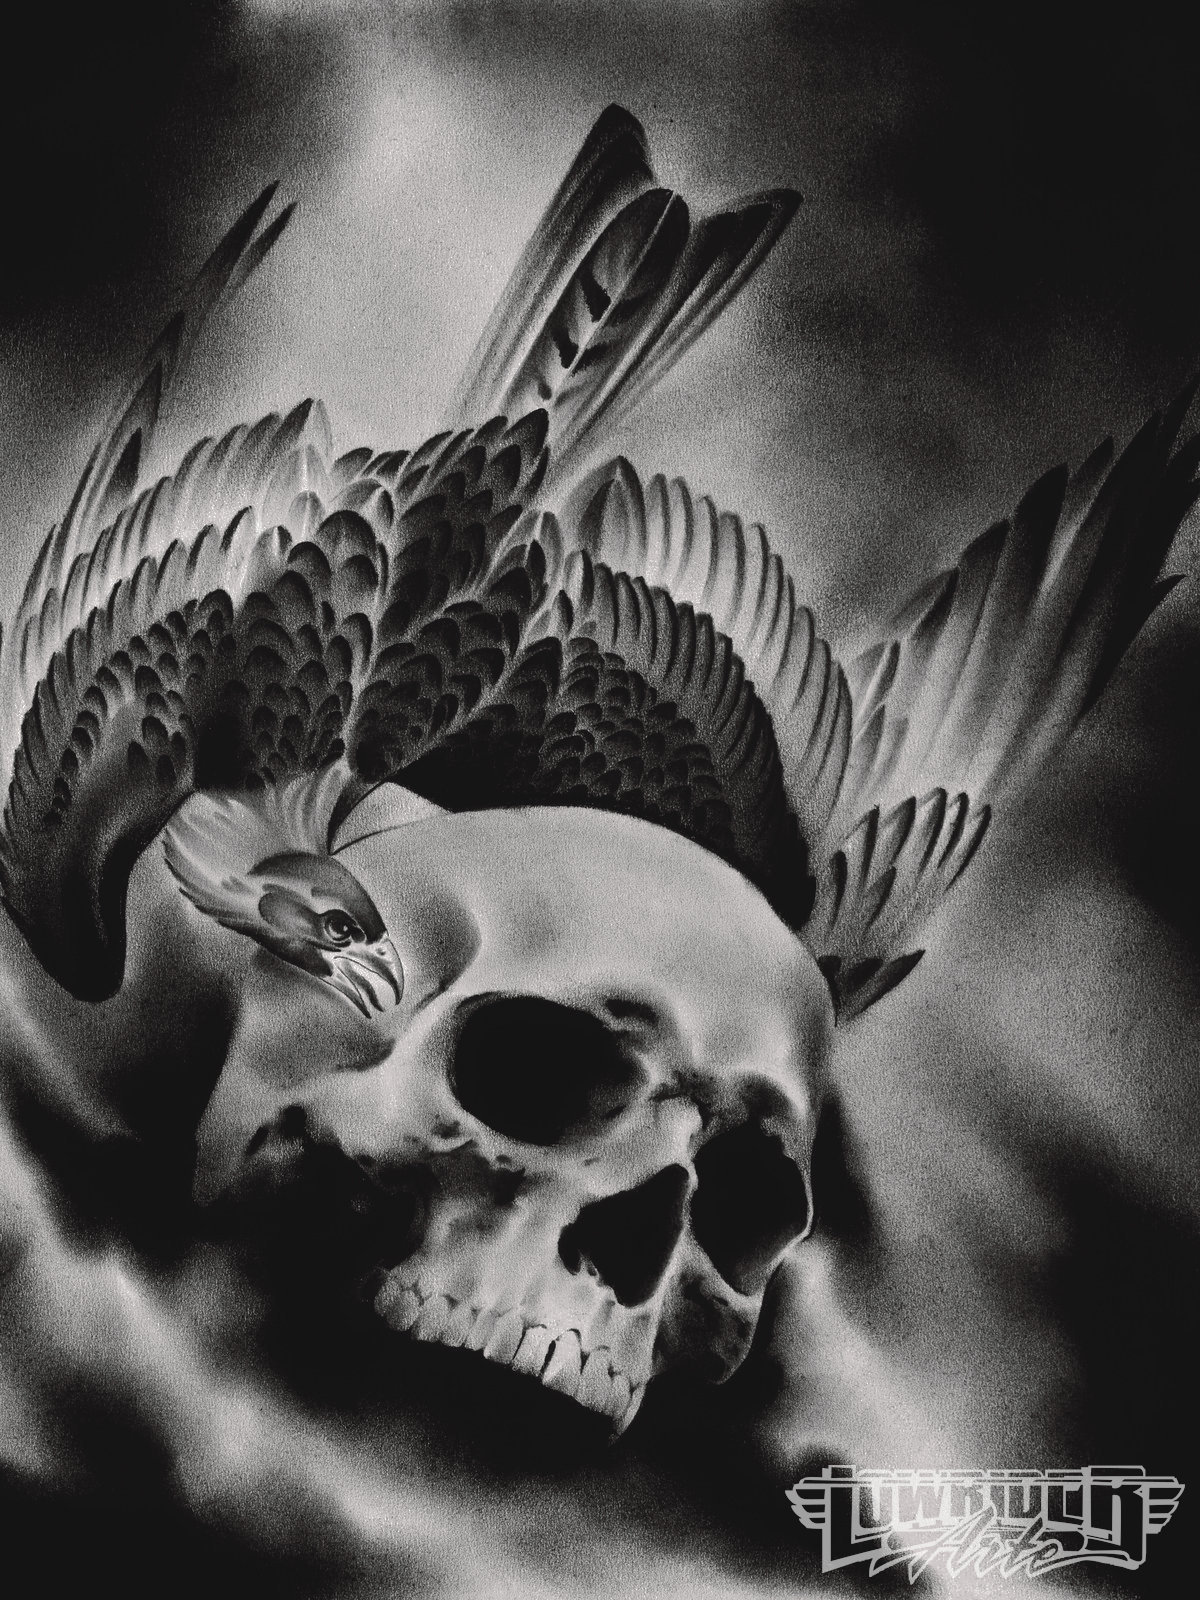 lowrider skull tattoo designs - Clip Art Library